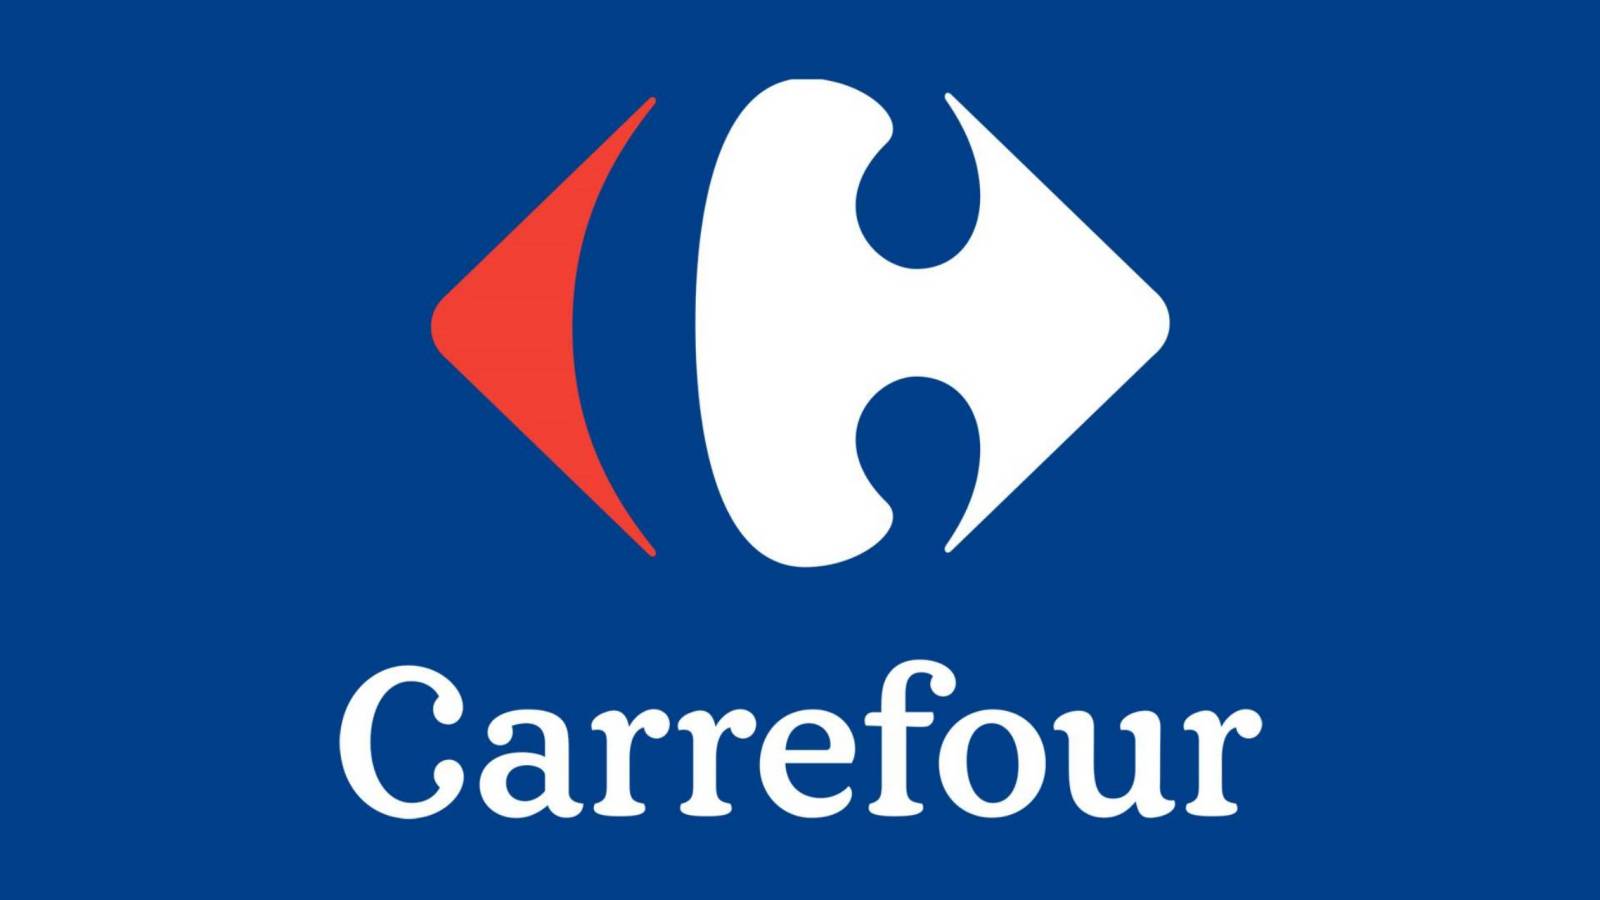 Carrefour alocare